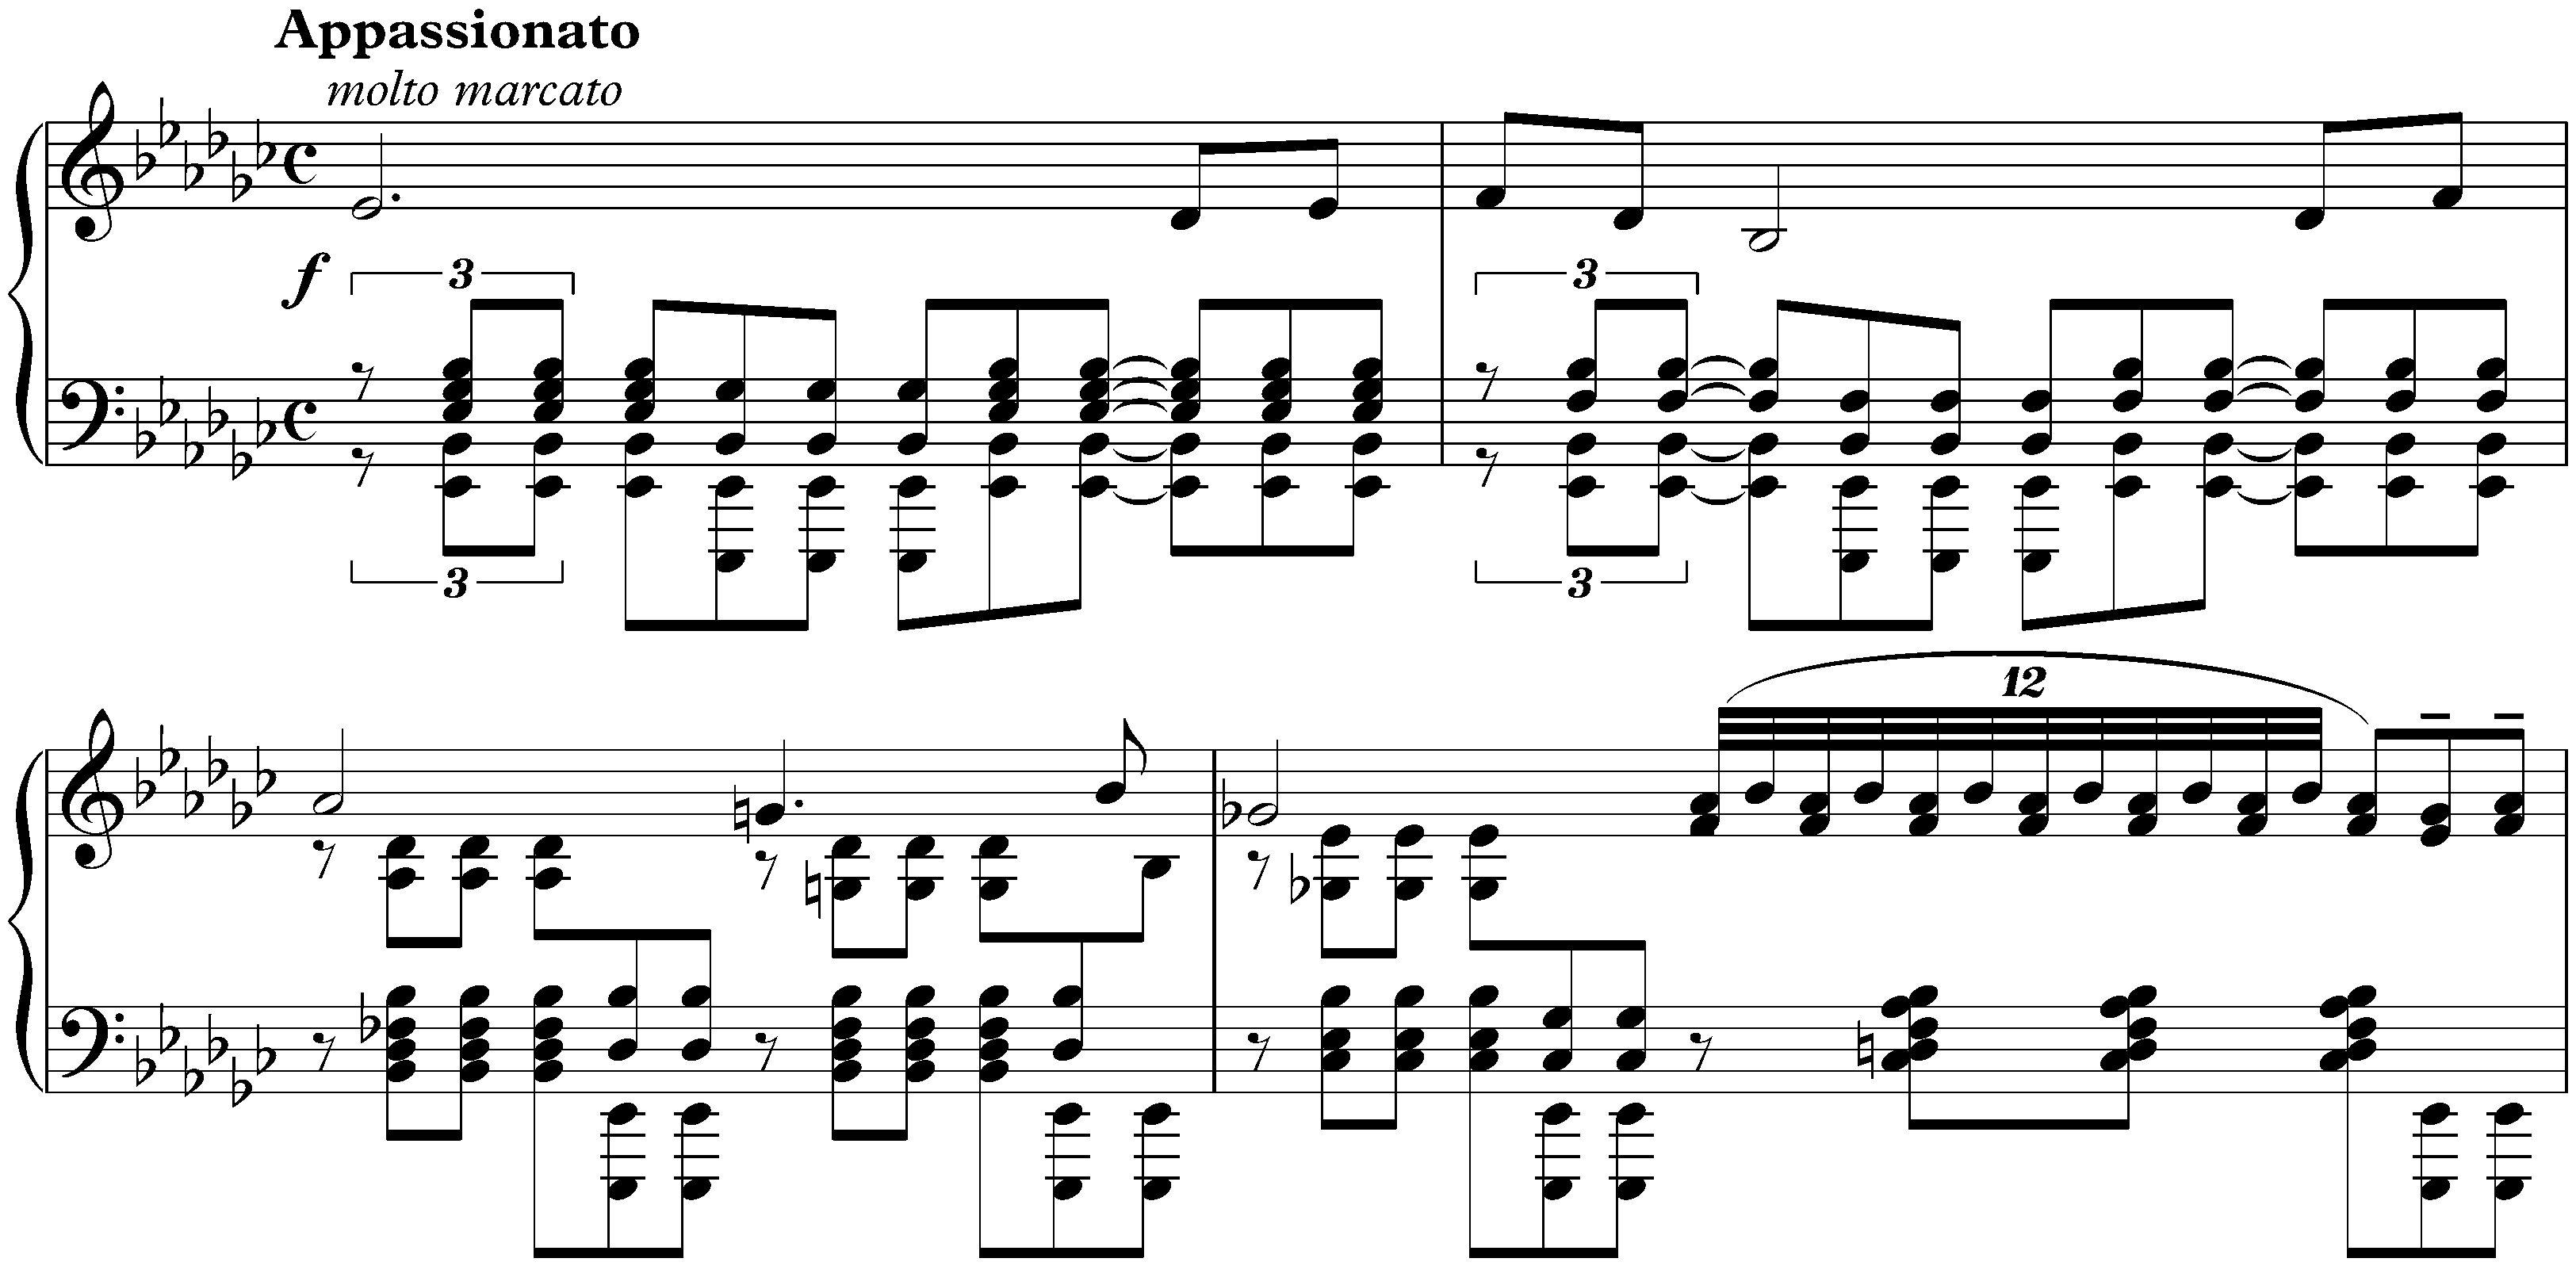 Études-tableaux, op. 39; 5. E-flat minor